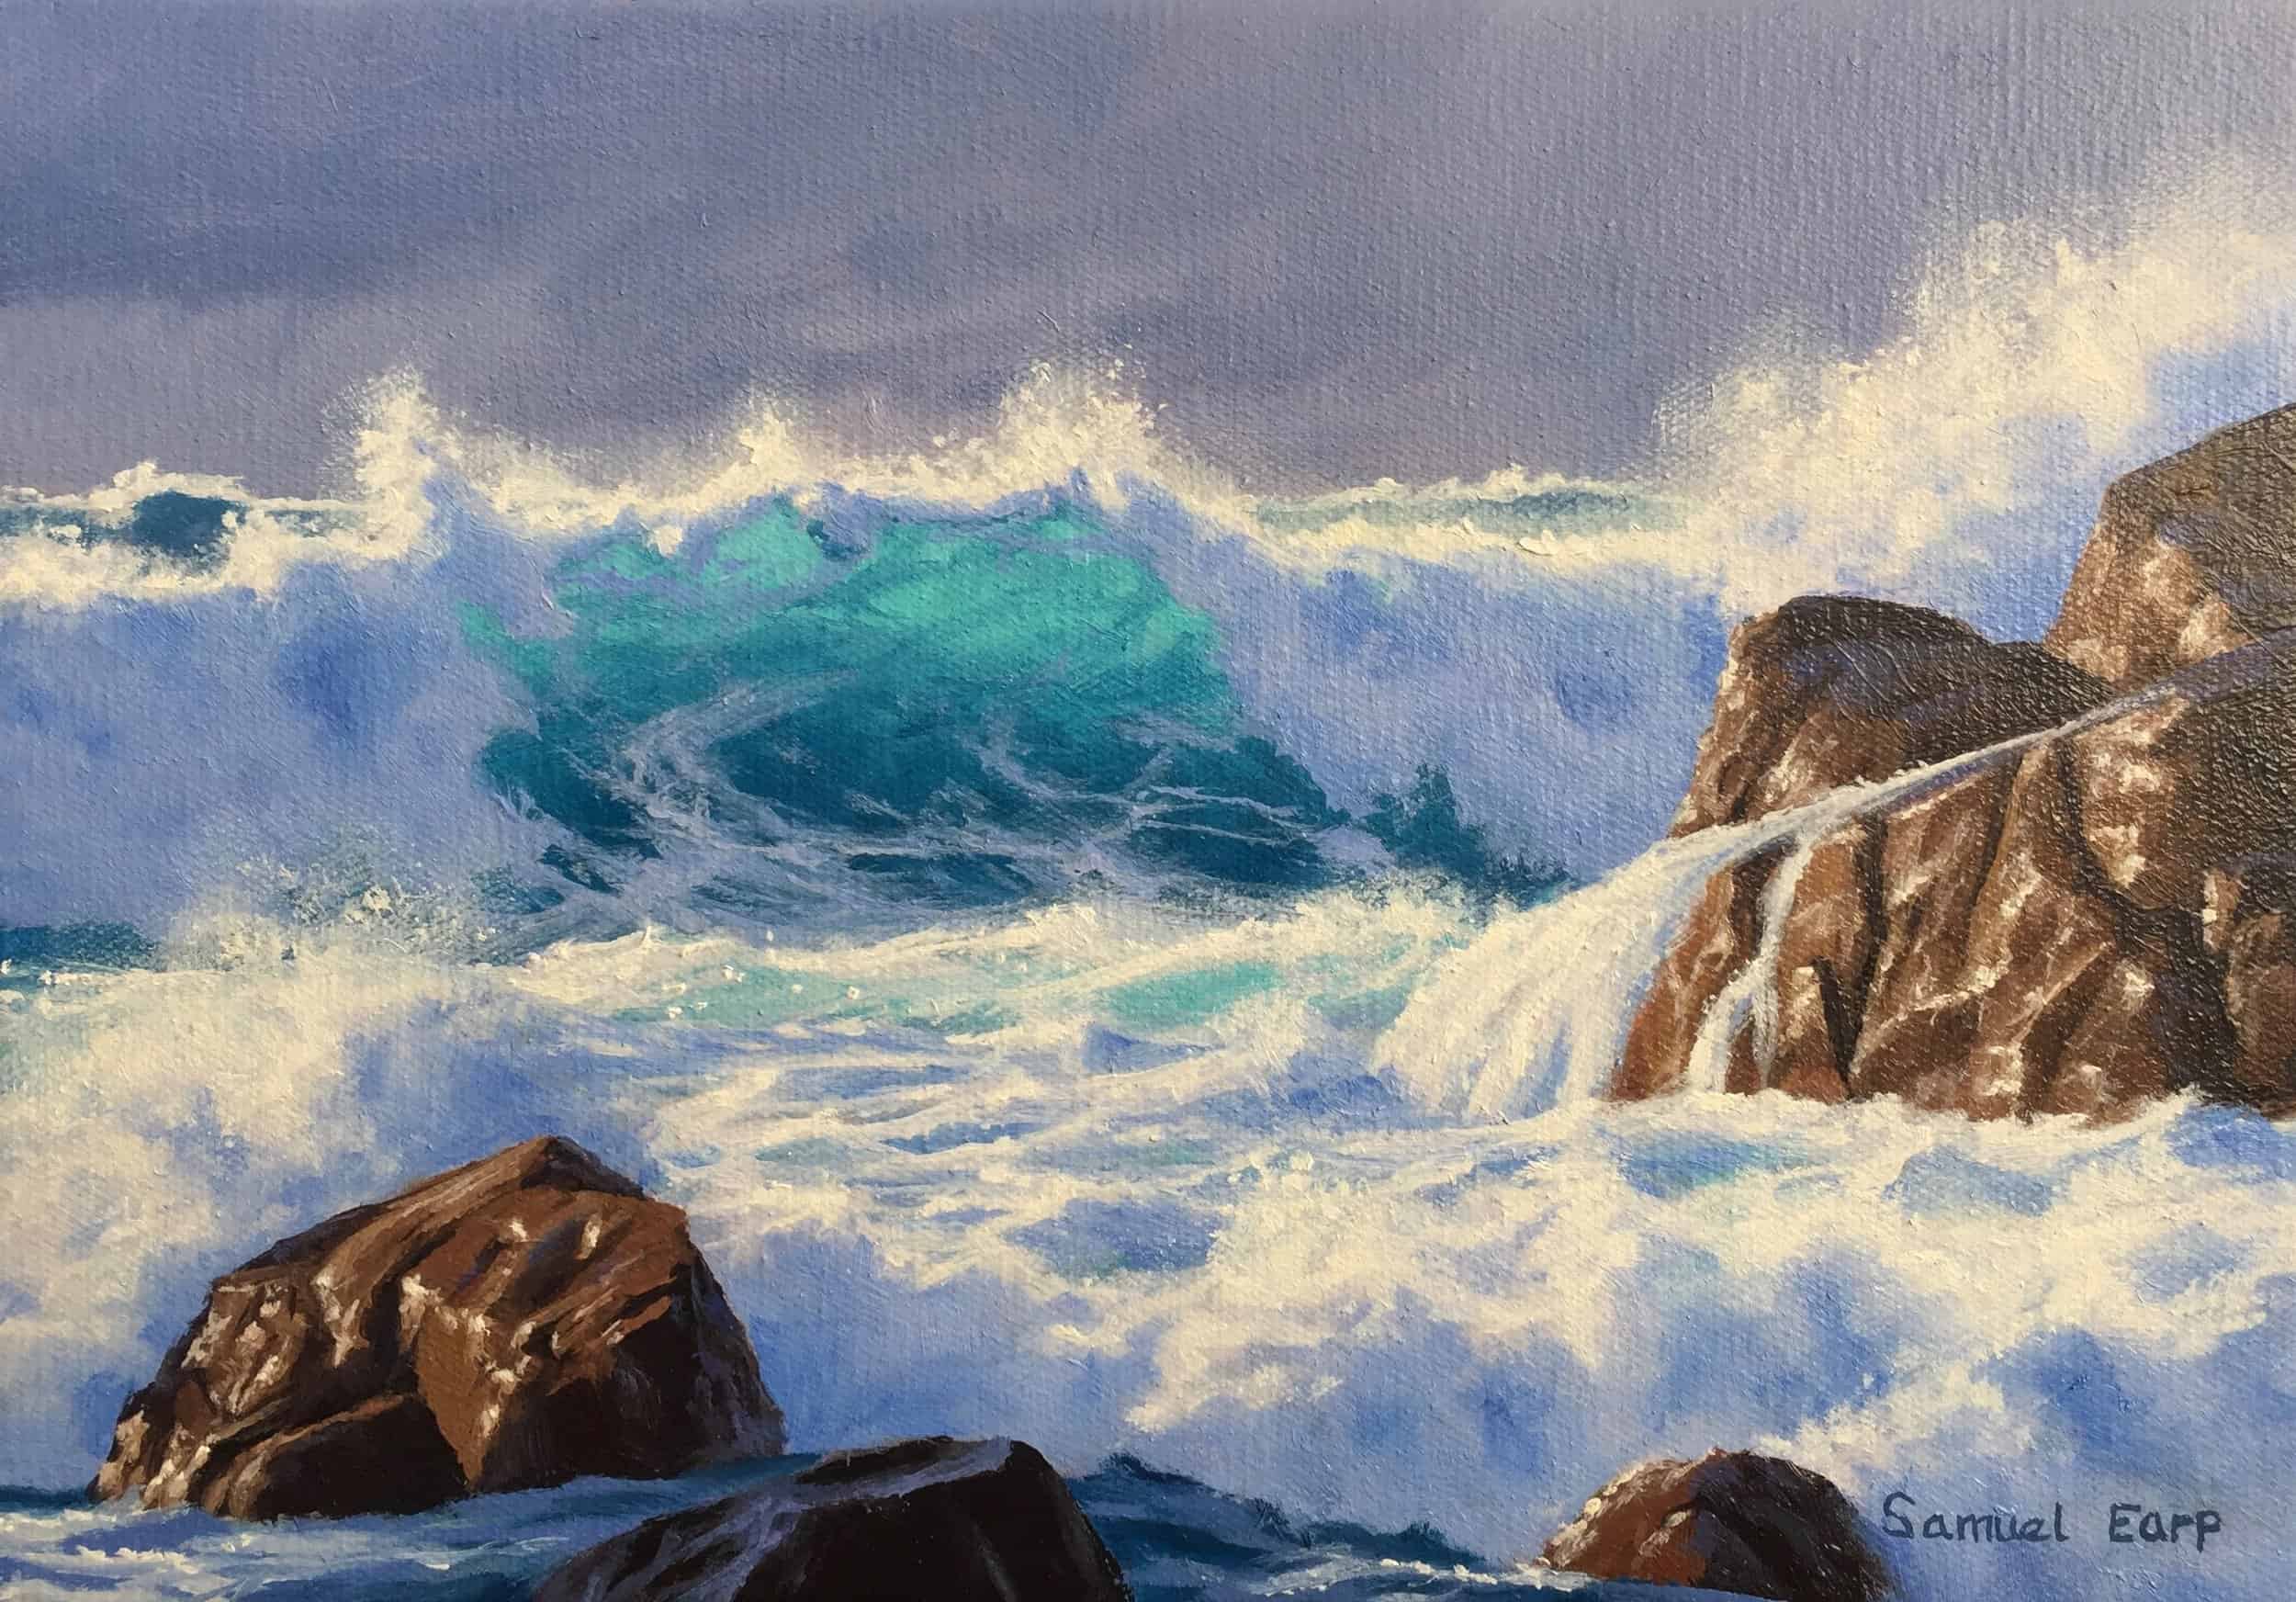 Atlantic Storm - seascape oil painting - Samuel Earp.jpg